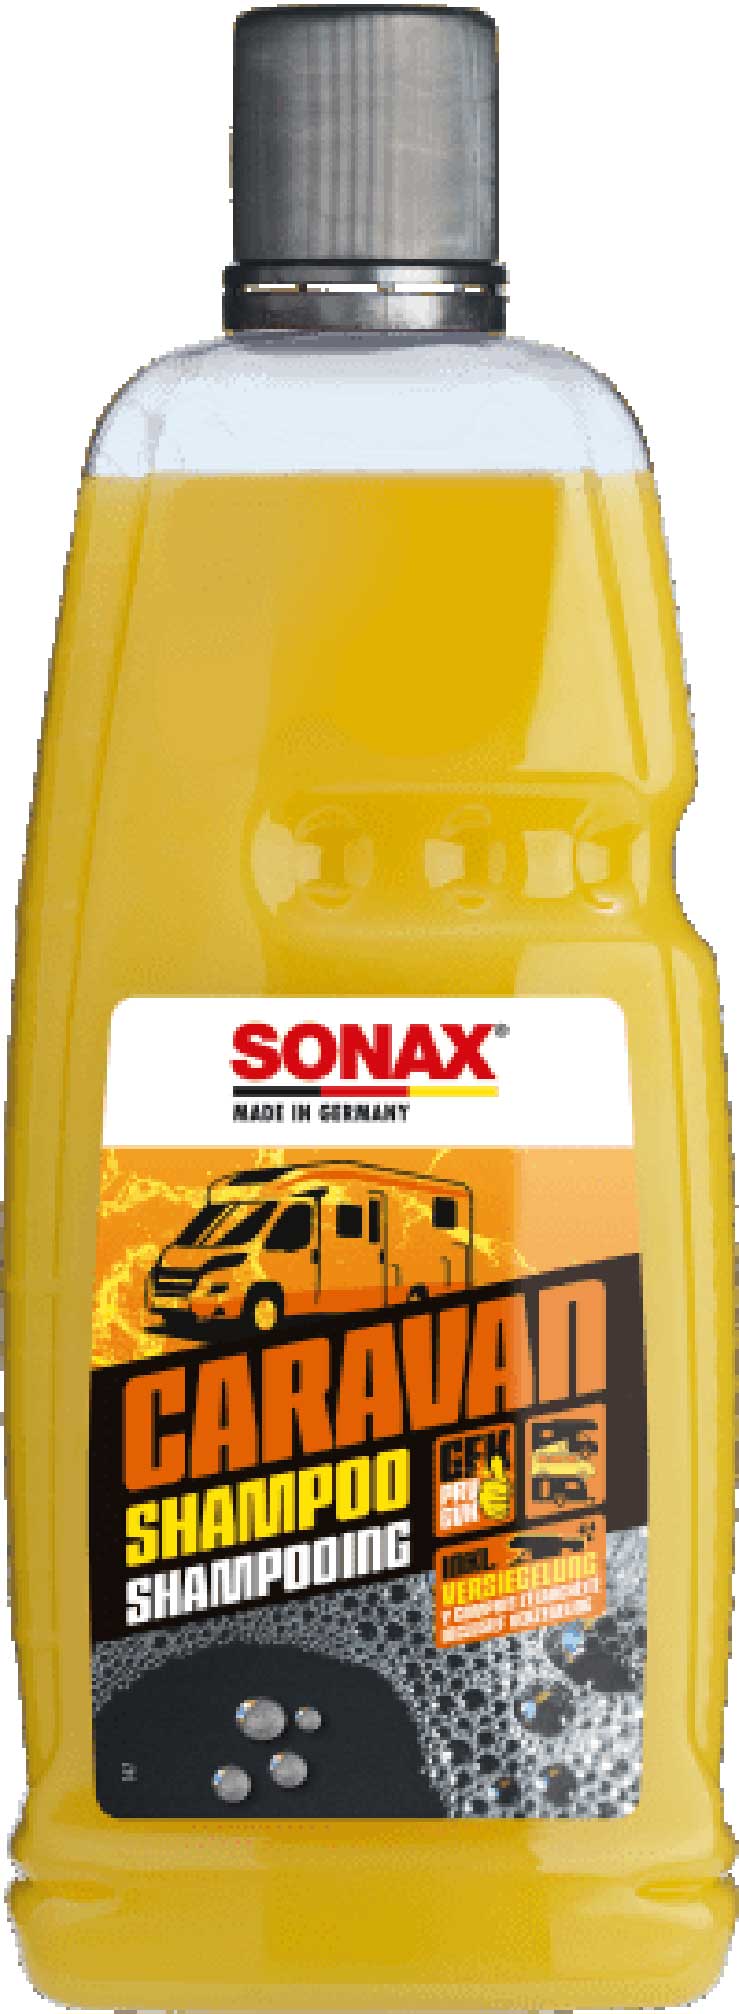 SONAX Caravan Shampoo 1L  07133000